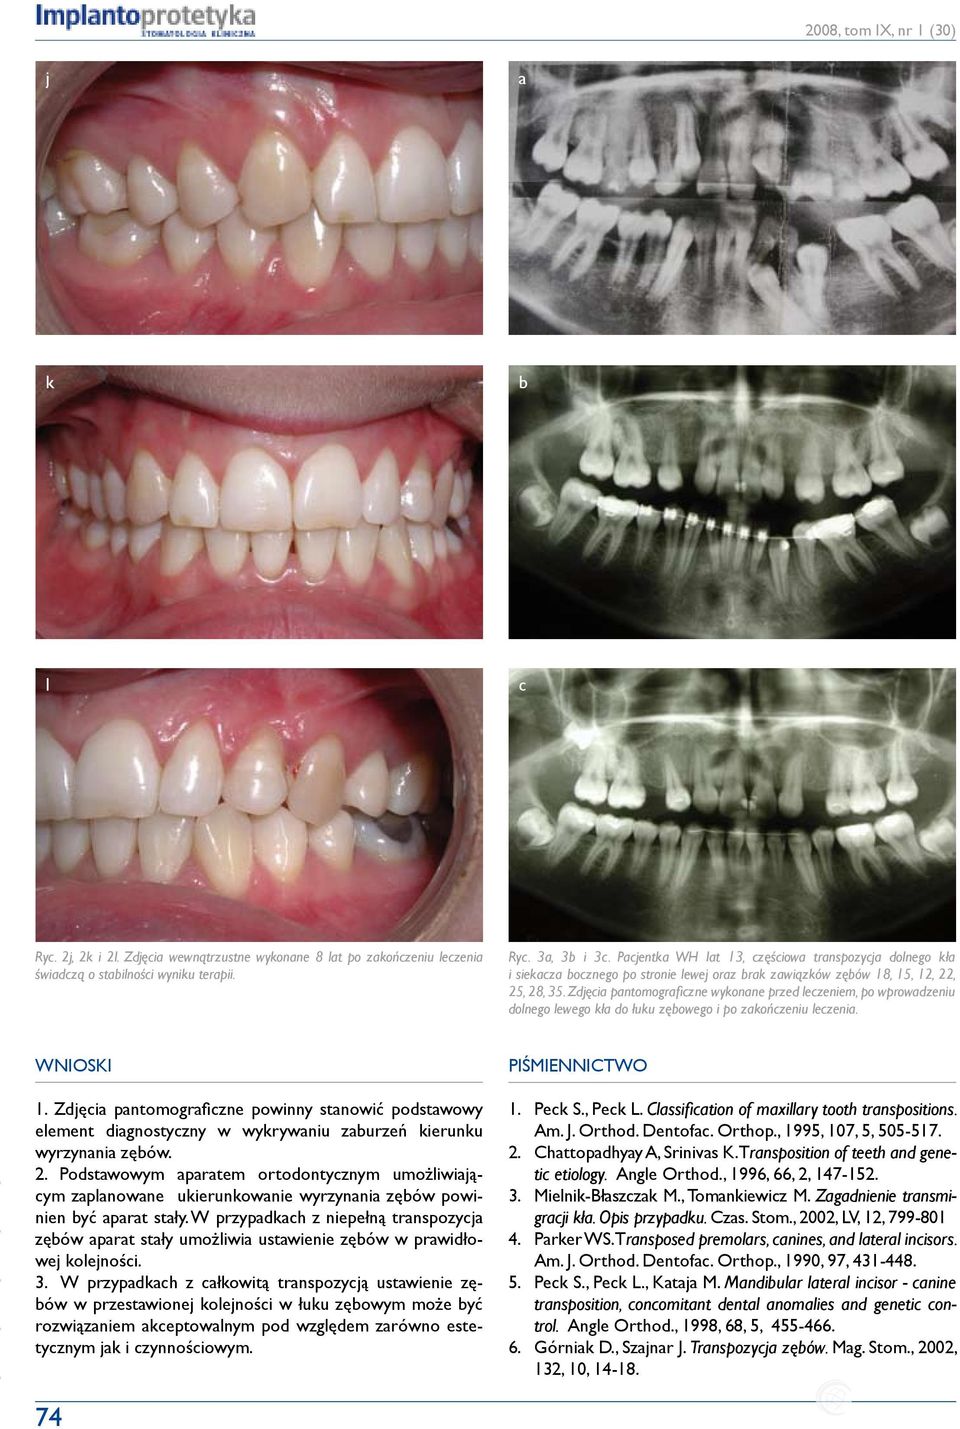 Zdjęcia pantomograficzne wykonane przed leczeniem, po wprowadzeniu dolnego lewego kła do łuku zębowego i po zakończeniu leczenia. Wnioski 1.